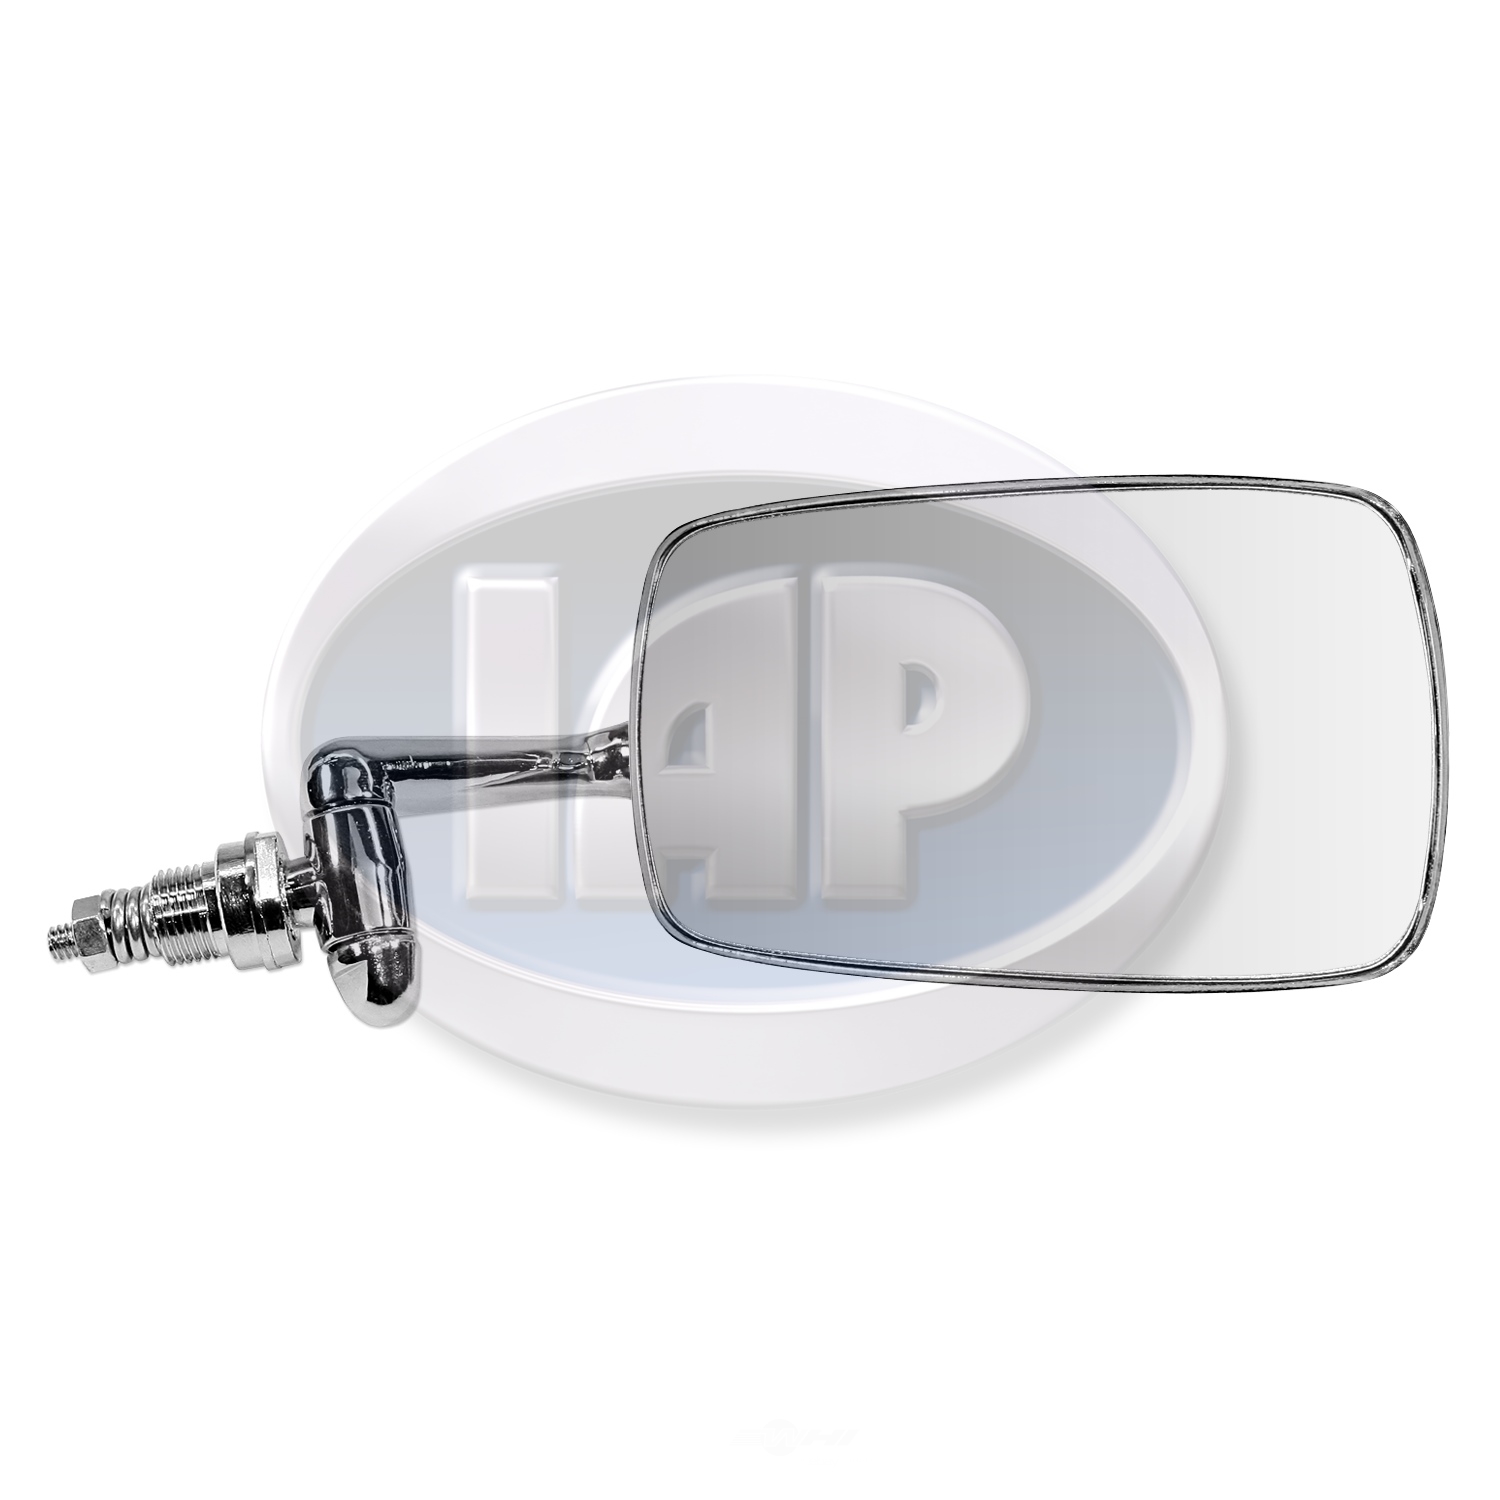 IAP/KUHLTEK MOTORWERKS - Door Mirror (Right) - KMS 114857513C